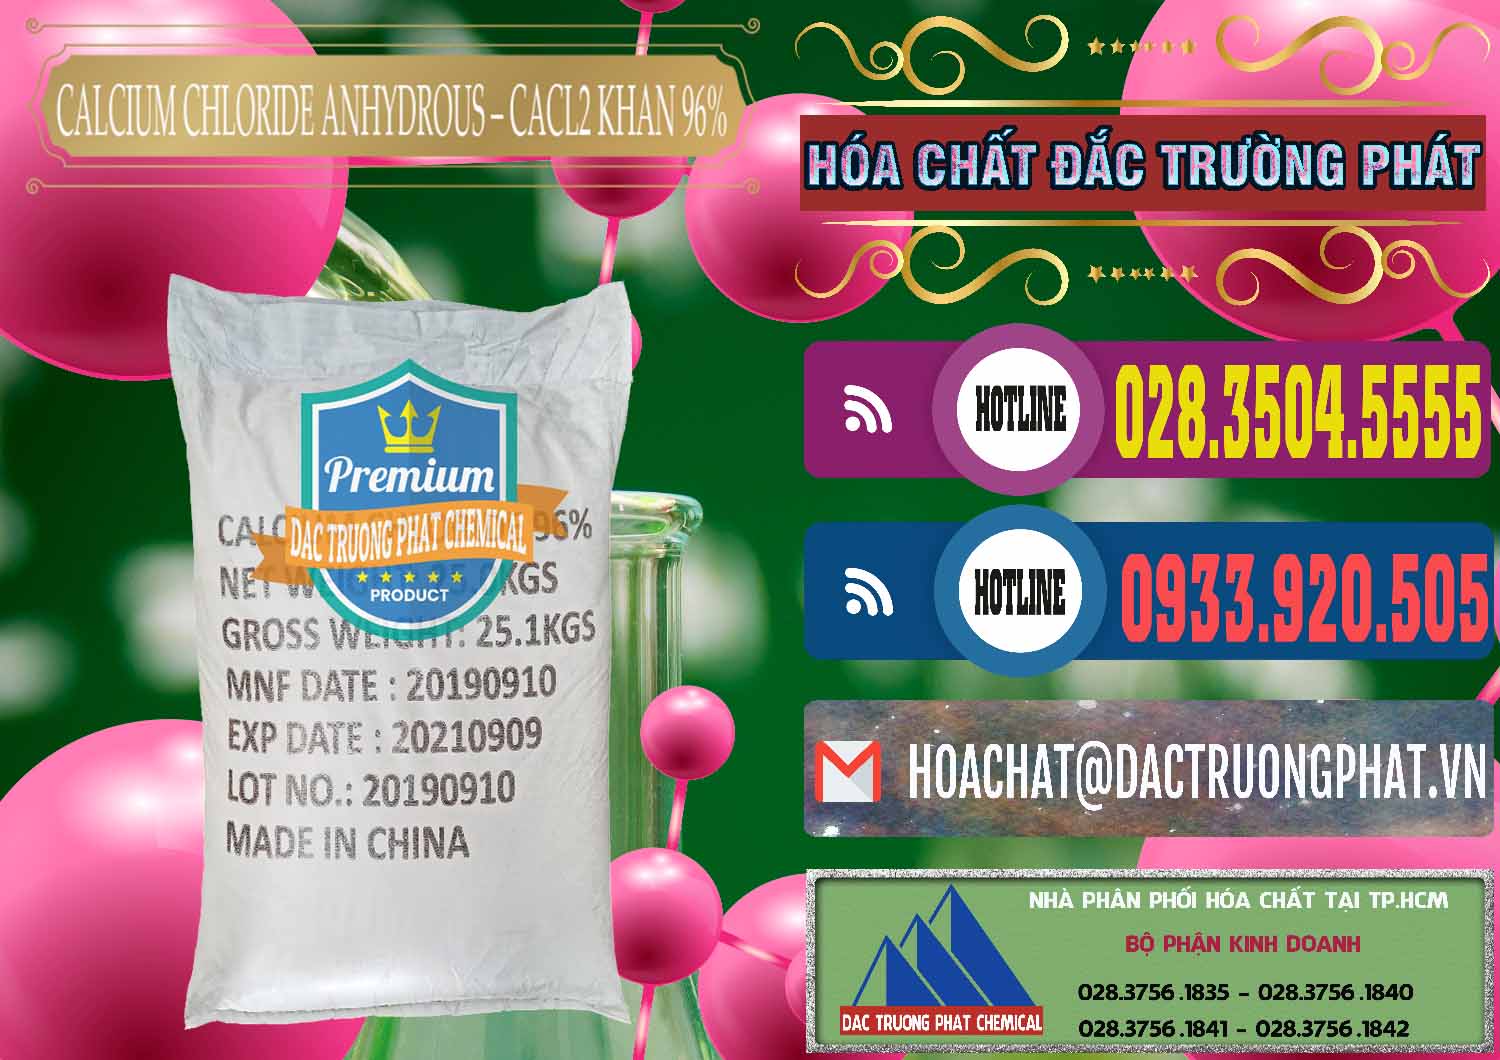 Cty nhập khẩu & bán CaCl2 – Canxi Clorua Anhydrous Khan 96% Trung Quốc China - 0043 - Nơi chuyên cung cấp và kinh doanh hóa chất tại TP.HCM - muabanhoachat.com.vn